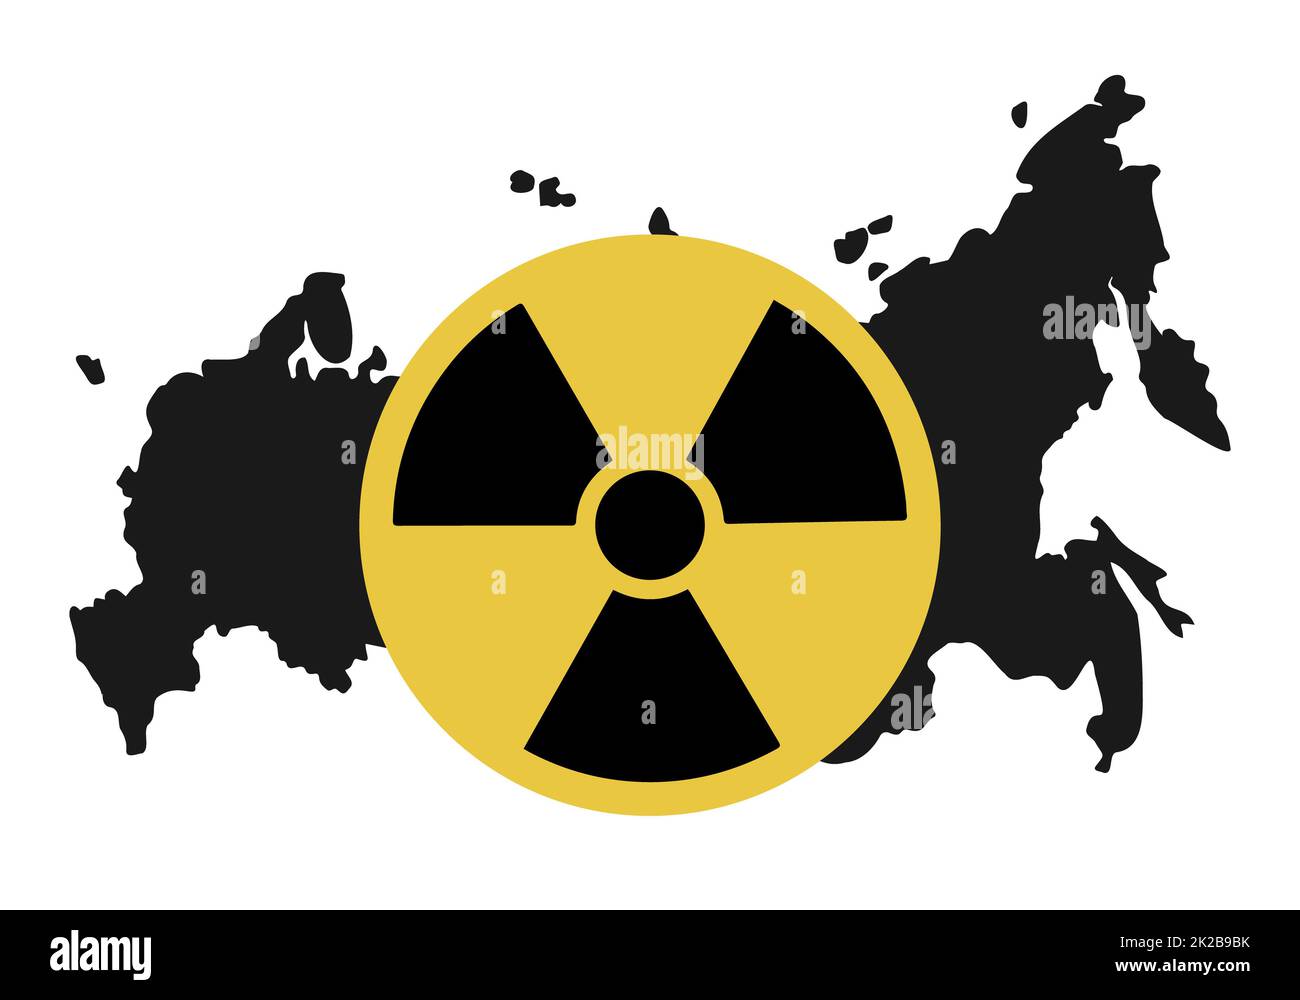 Kernwaffen stoppen - Konzeptbanner. Atombombenzeichen auf der Karte russlands. Russische Massenvernichtungswaffen dürfen nicht eingesetzt werden. Stoppt den Krieg in der Ukraine und auf der Erde. Vektordarstellung. Stockfoto